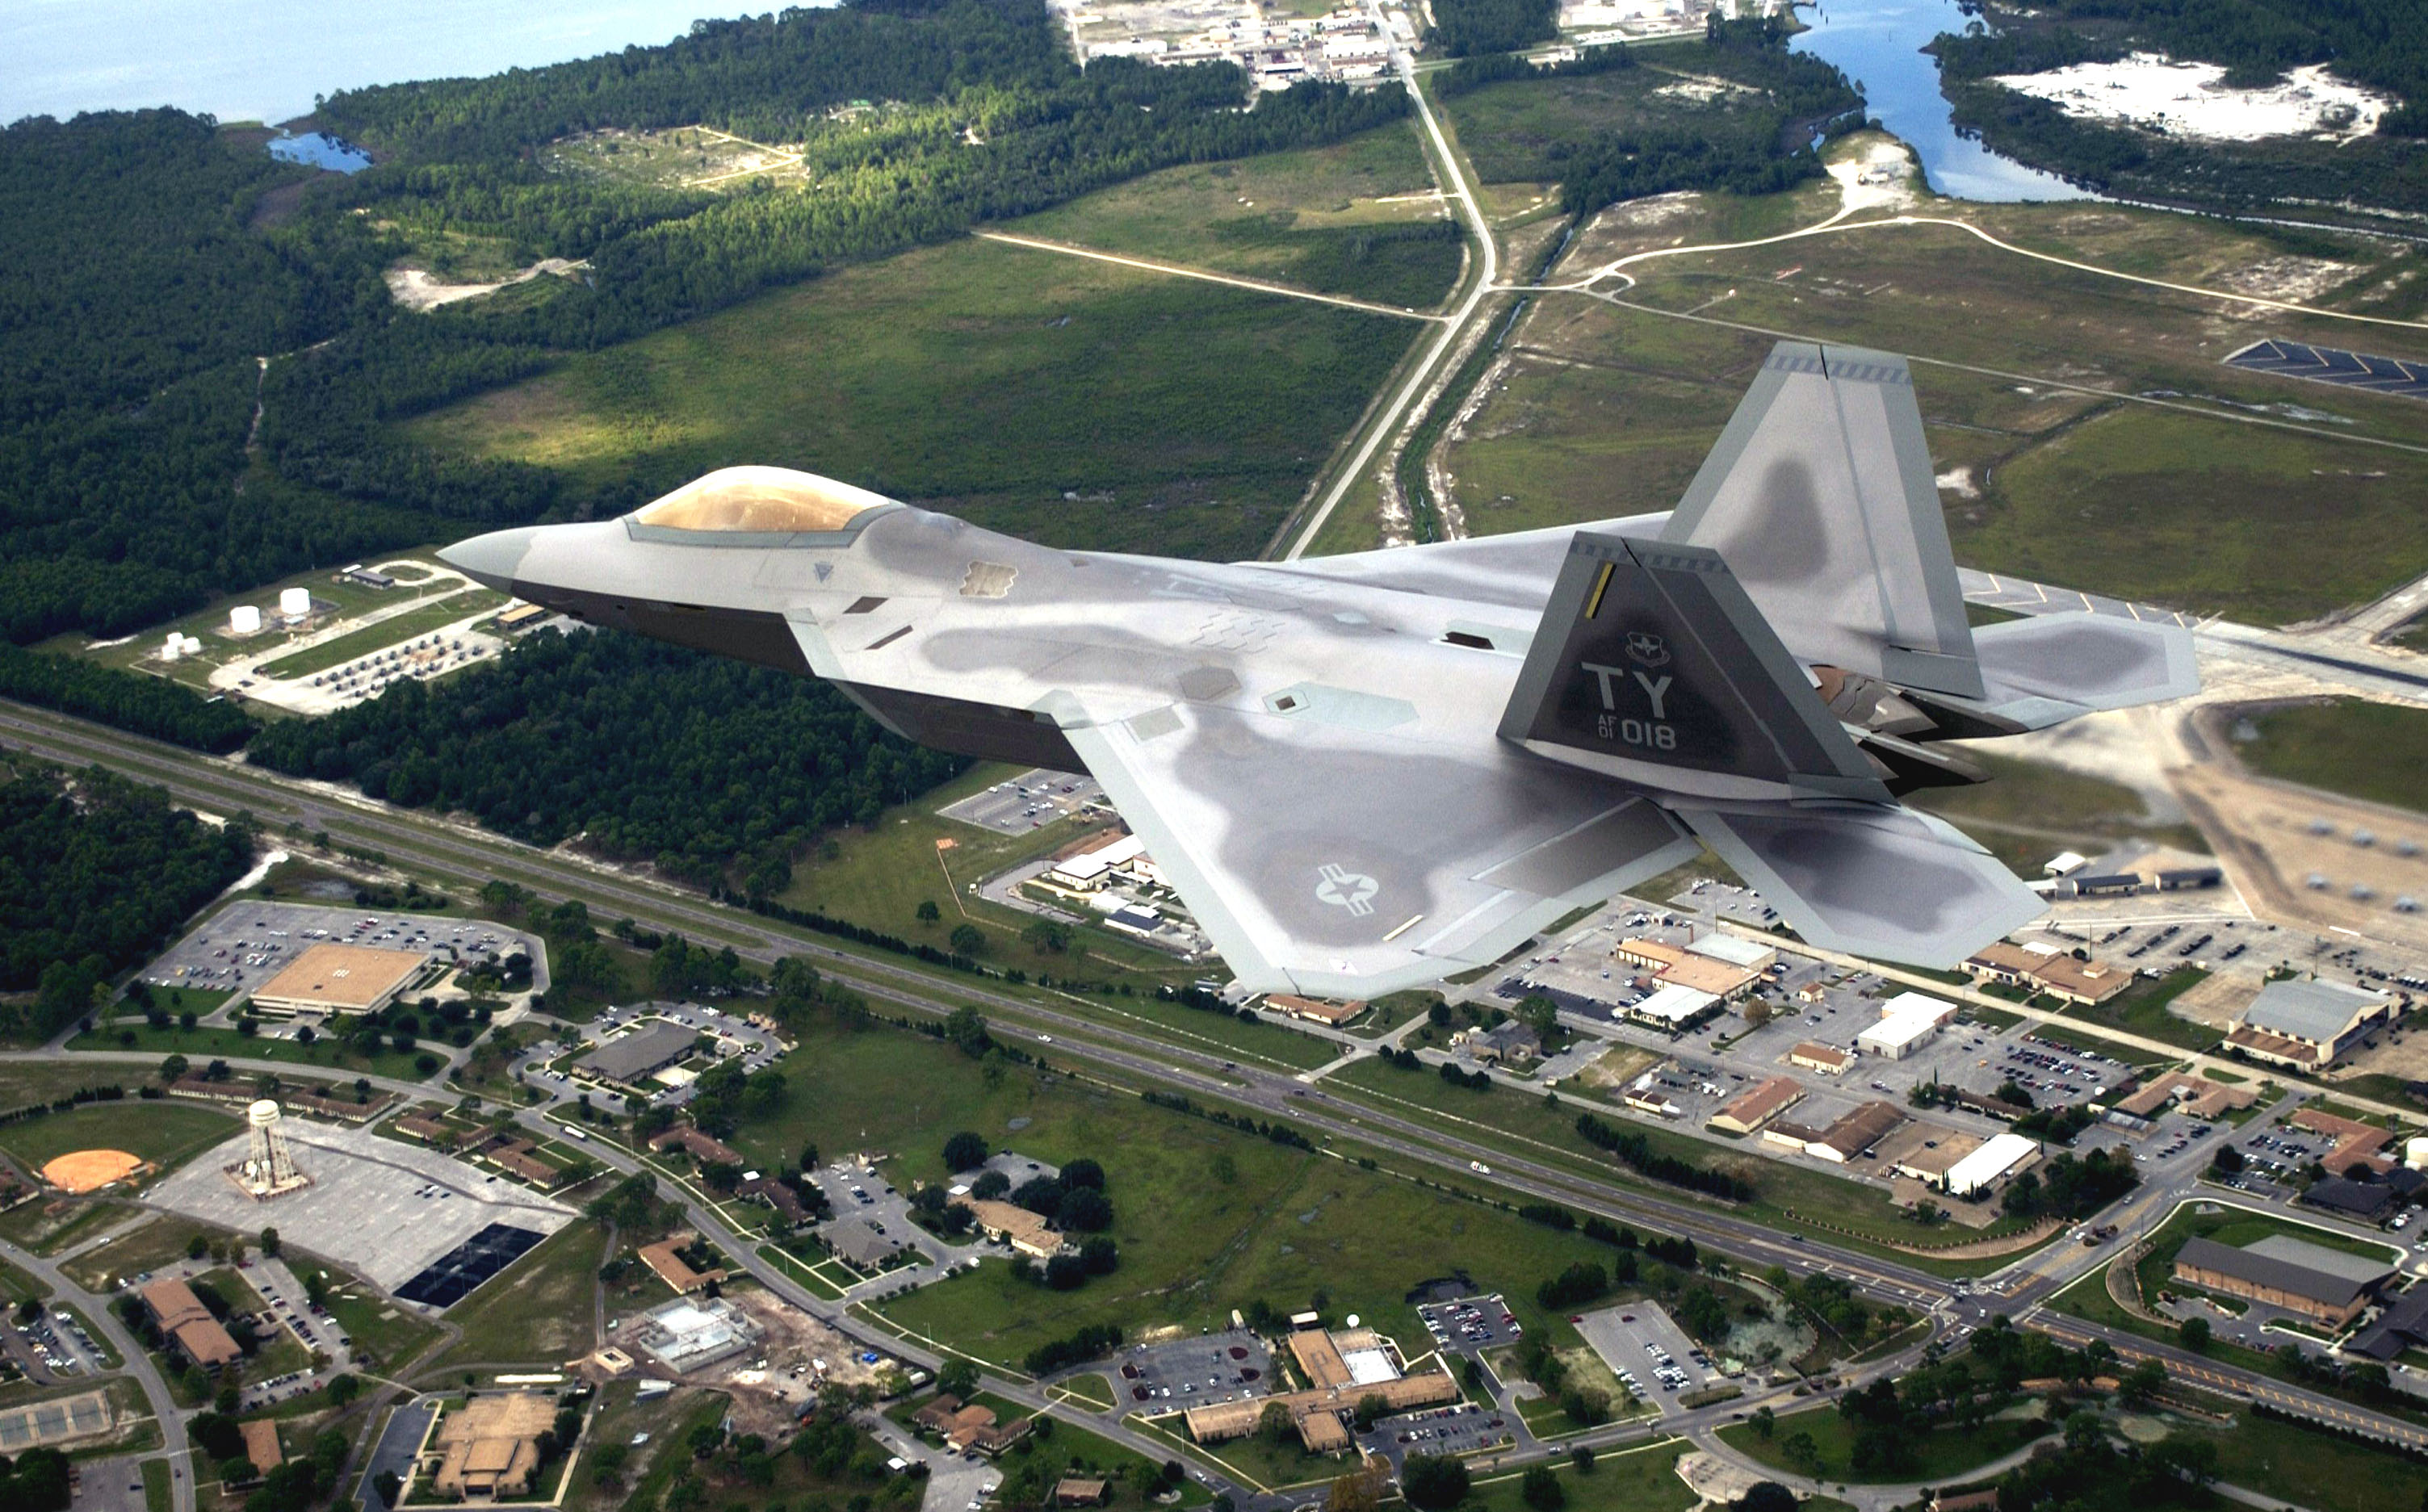 La base aérea de Tyndall ha enviado un caza F-22 Raptor al museo y se prepara para la llegada del F-35 Lightning II